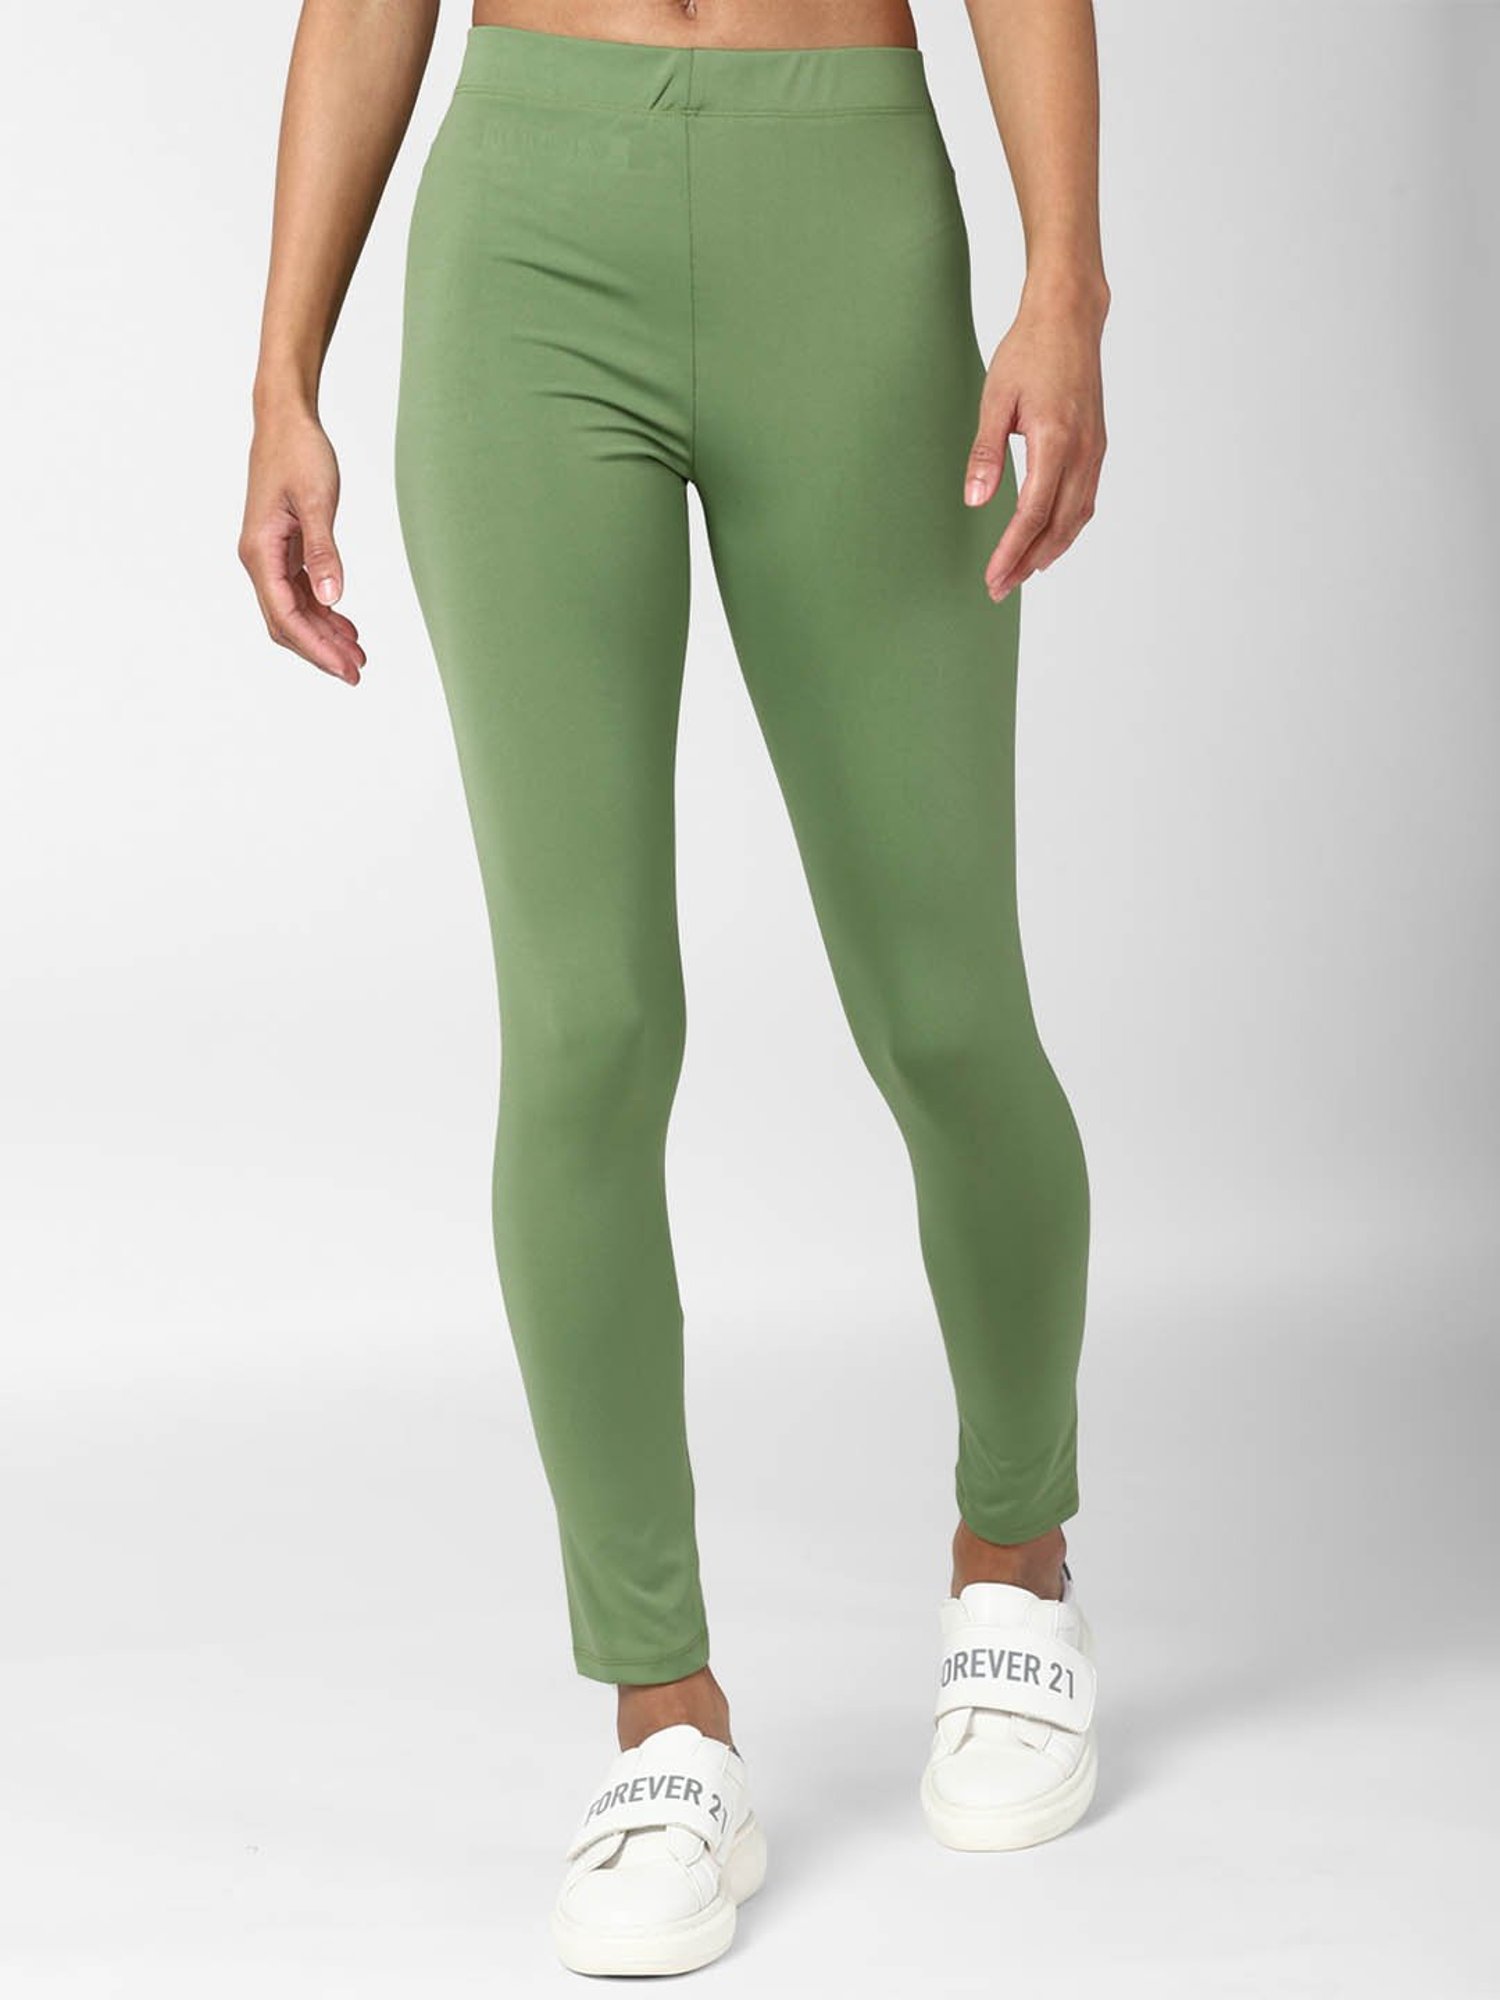 Buy Forever 21 Neon Green Regular fit Leggings for Women Online @ Tata CLiQ